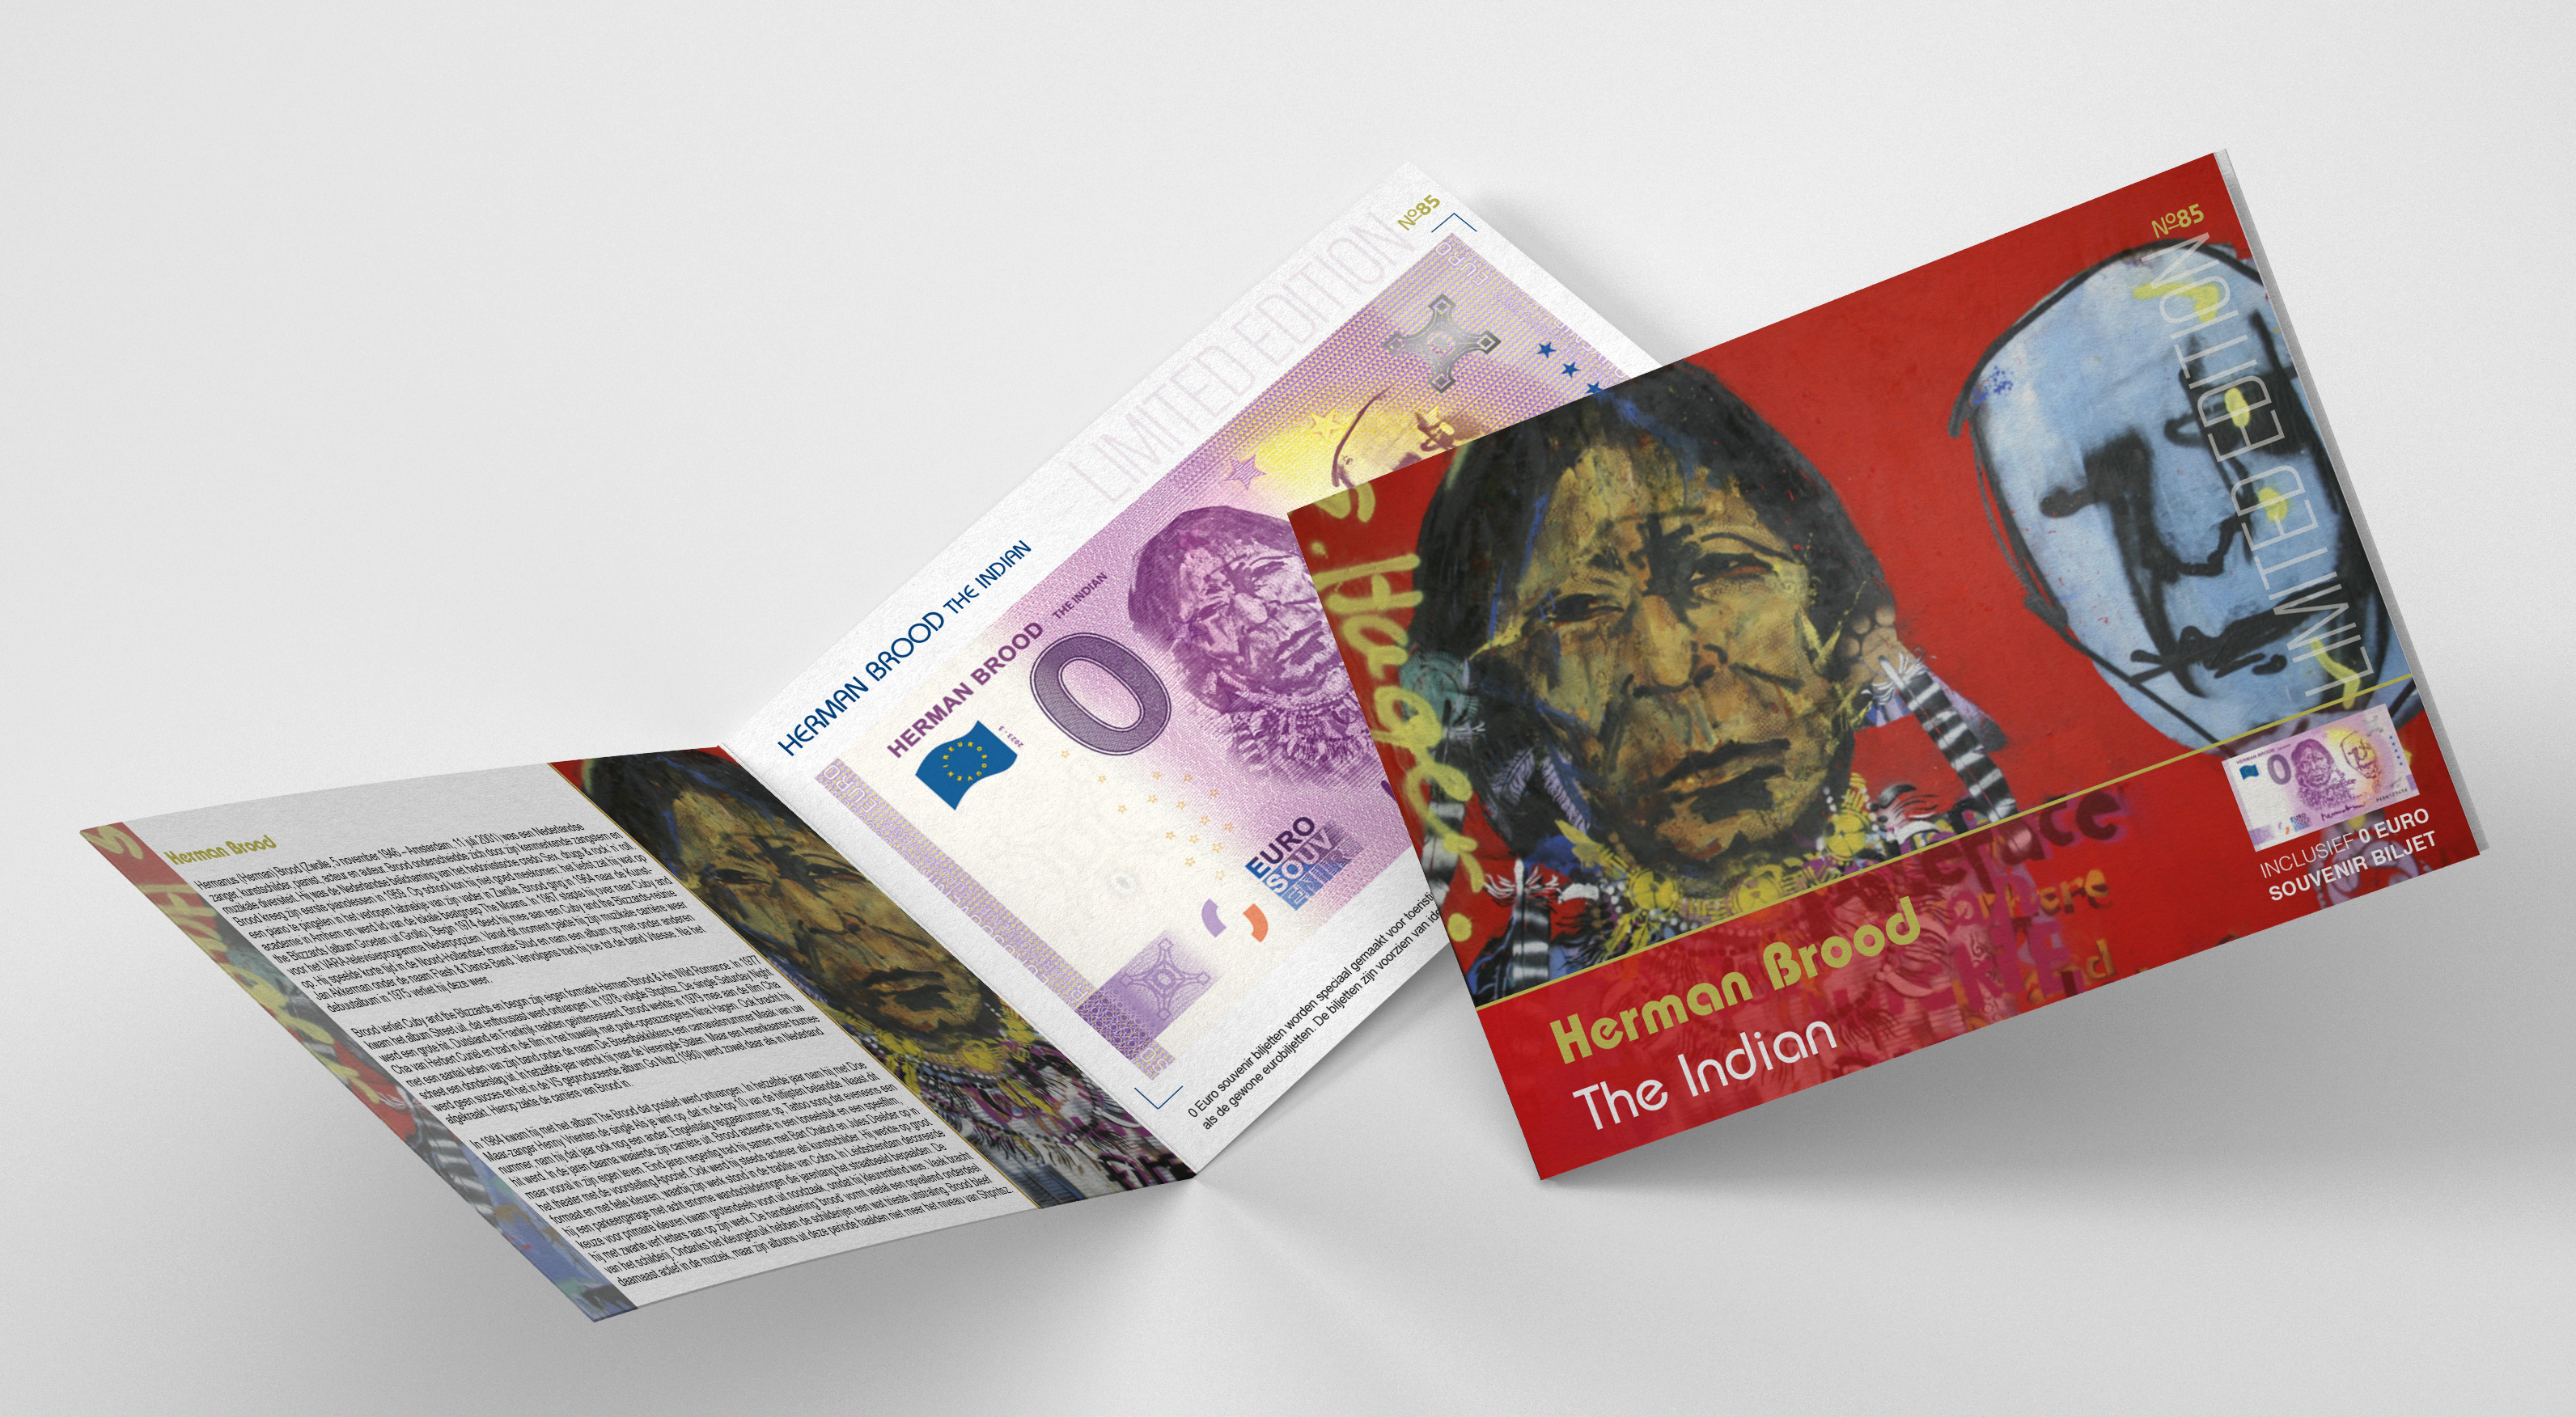 0 Euro biljet Nederland 2023 - Herman Brood The Indian LIMITED EDITION FIP#85